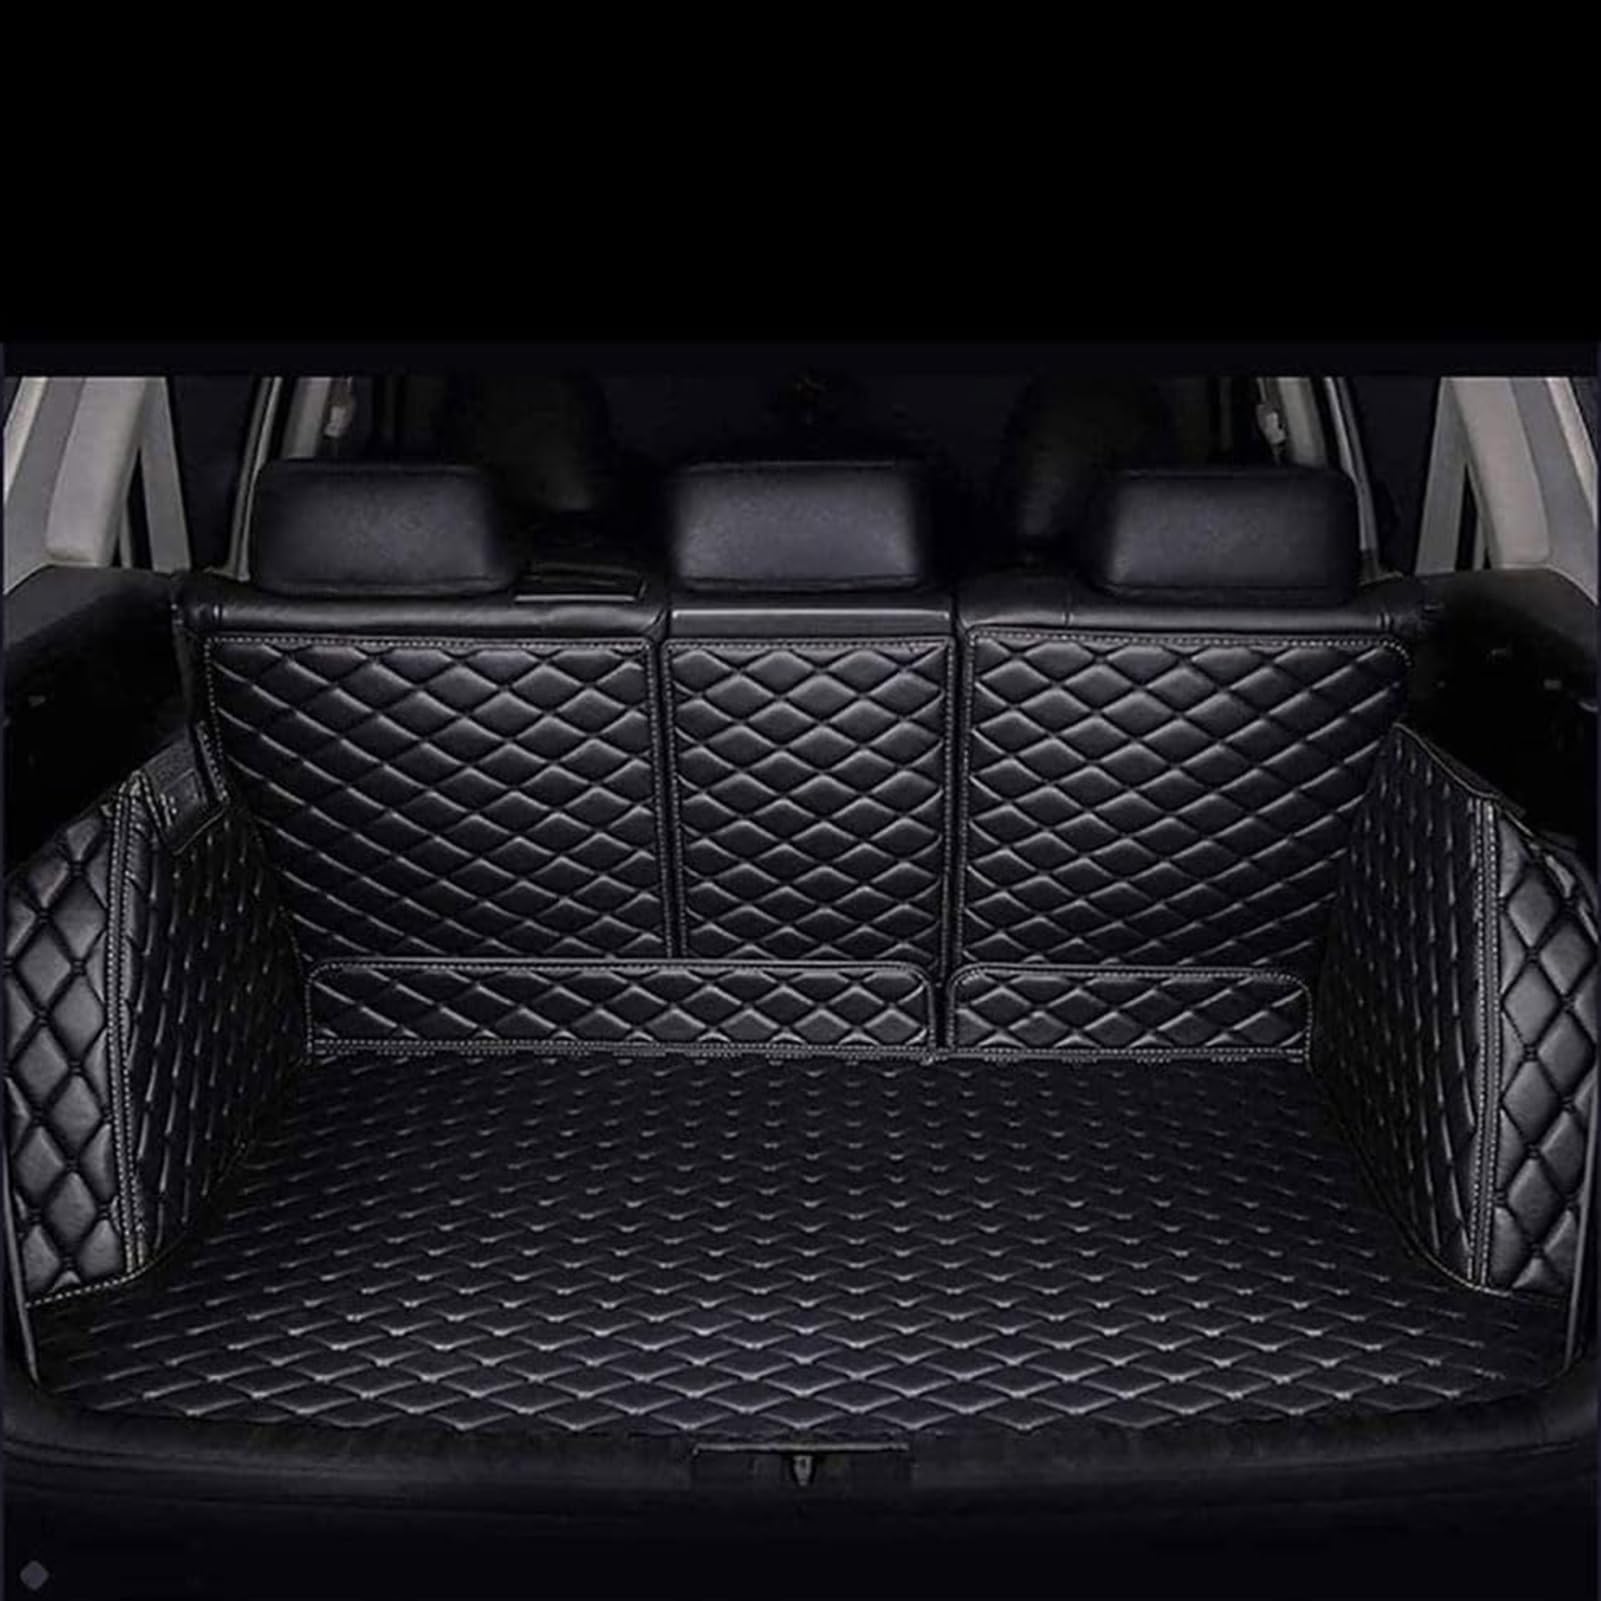 Auto Leder Kofferraummatten für Jeep Cherokee 2014-2018, VollstäNdige Kofferraumwanne Einkreisung Kofferraum Schutzmatte Auto Zubehör,Black/A von HYYLL